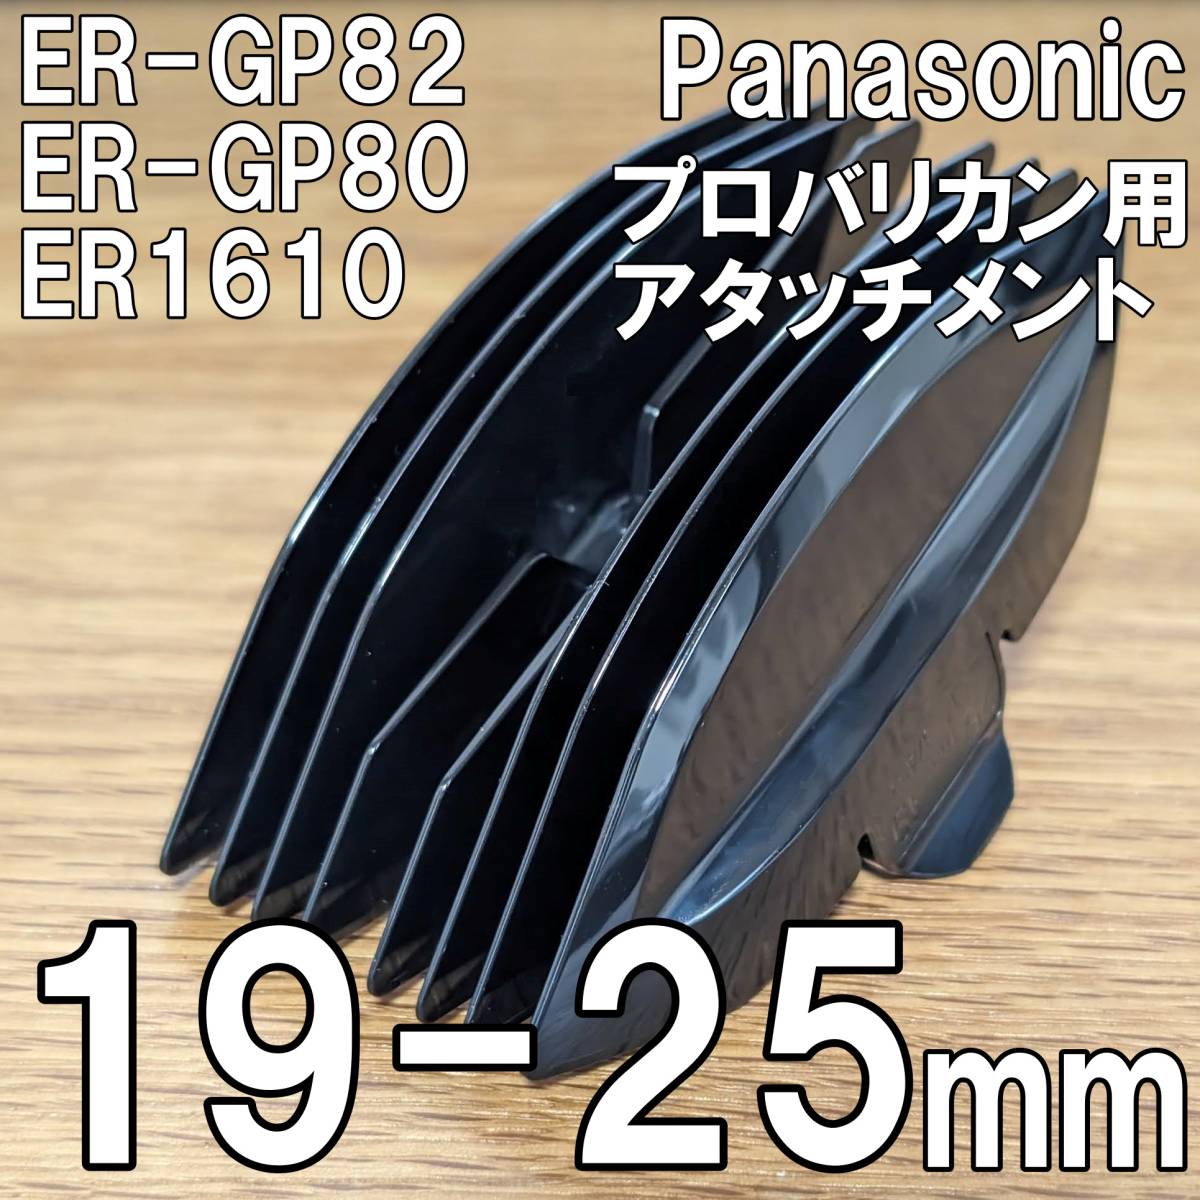 パナソニック　プロバリカン用 アタッチメント 19-25mm　国内非売品　Panasonic ER-GP82 ER-GP80 ER1610_画像1